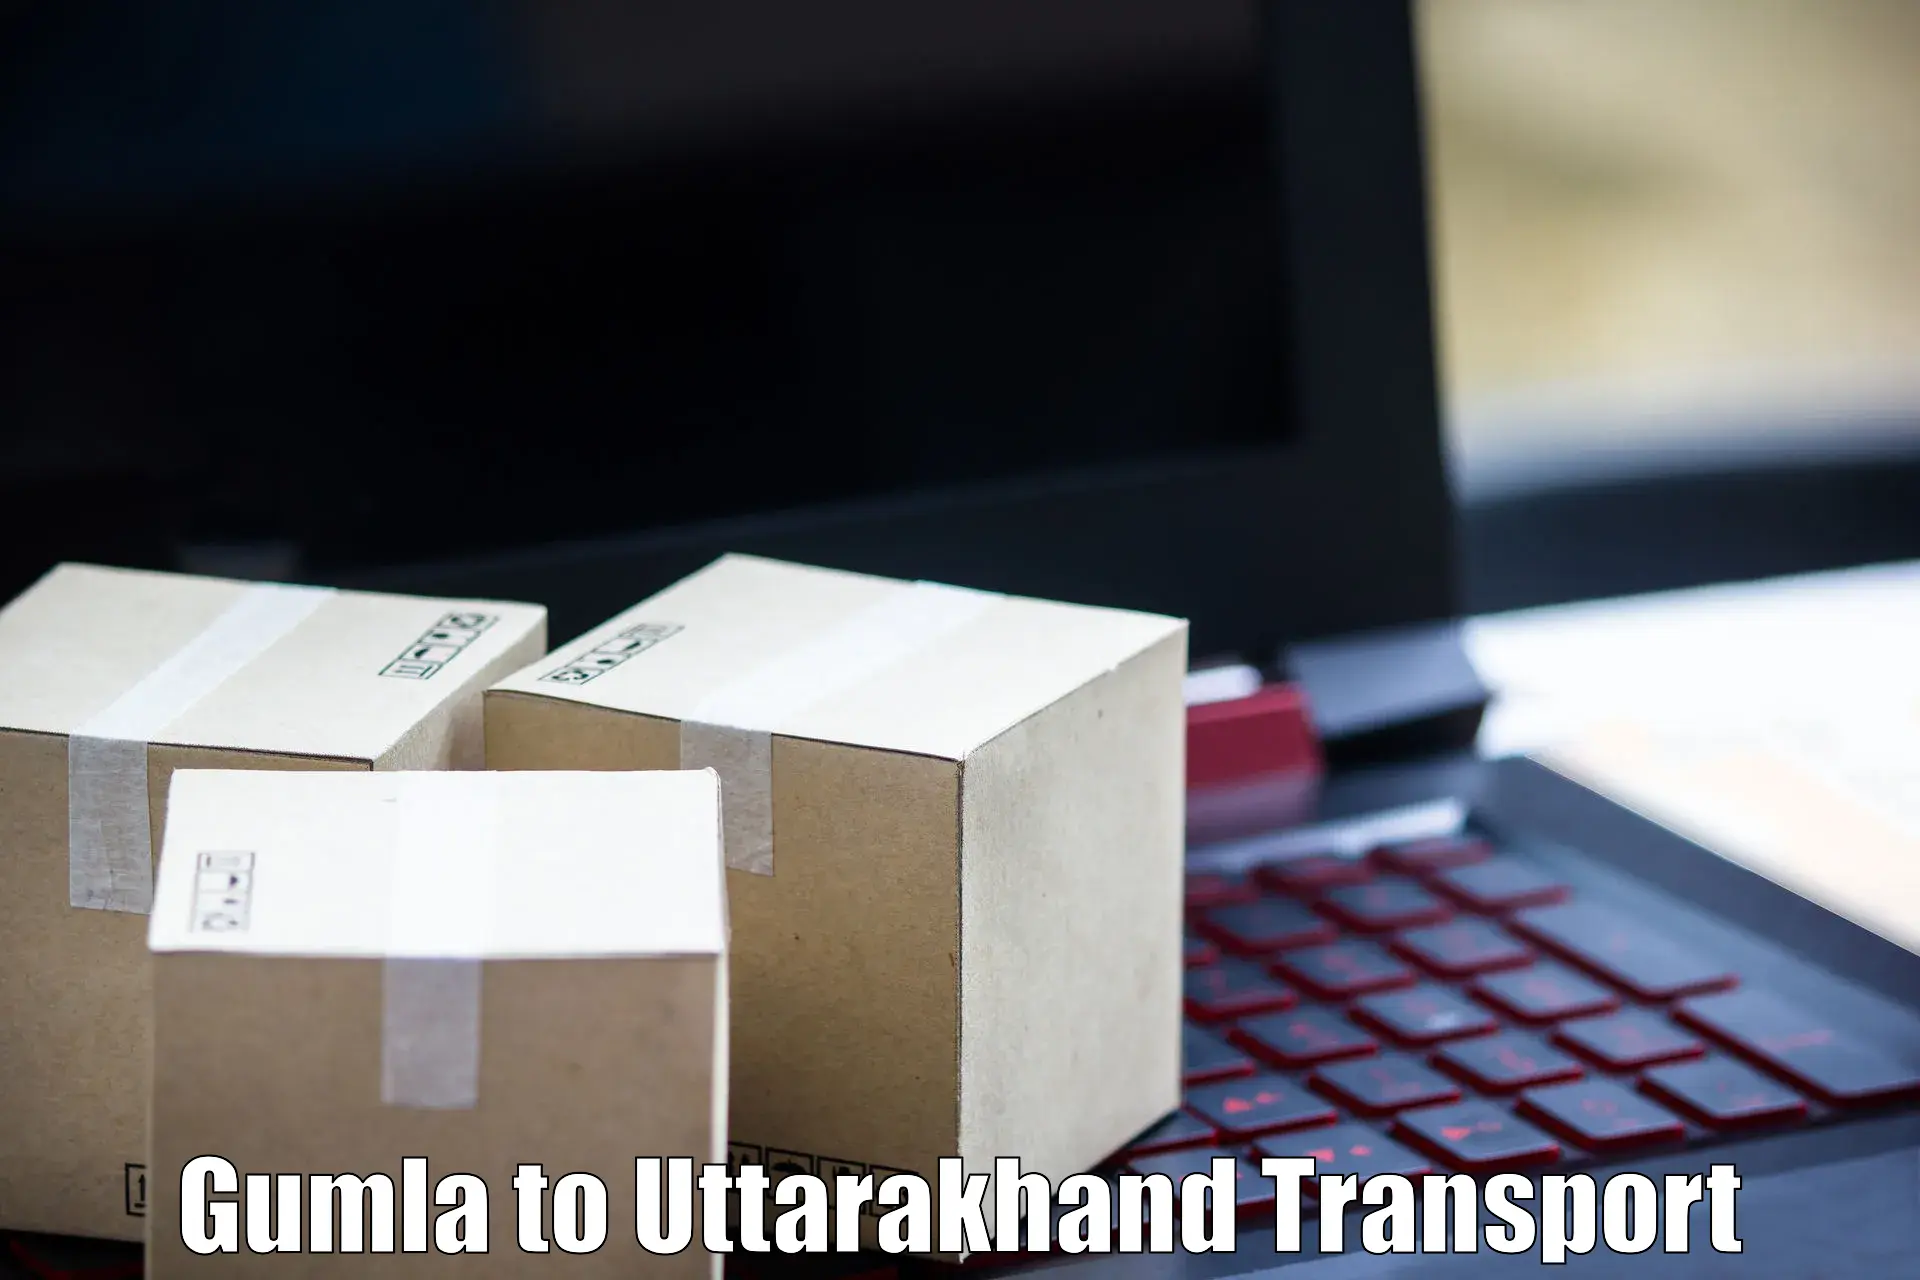 Road transport online services Gumla to IIT Roorkee